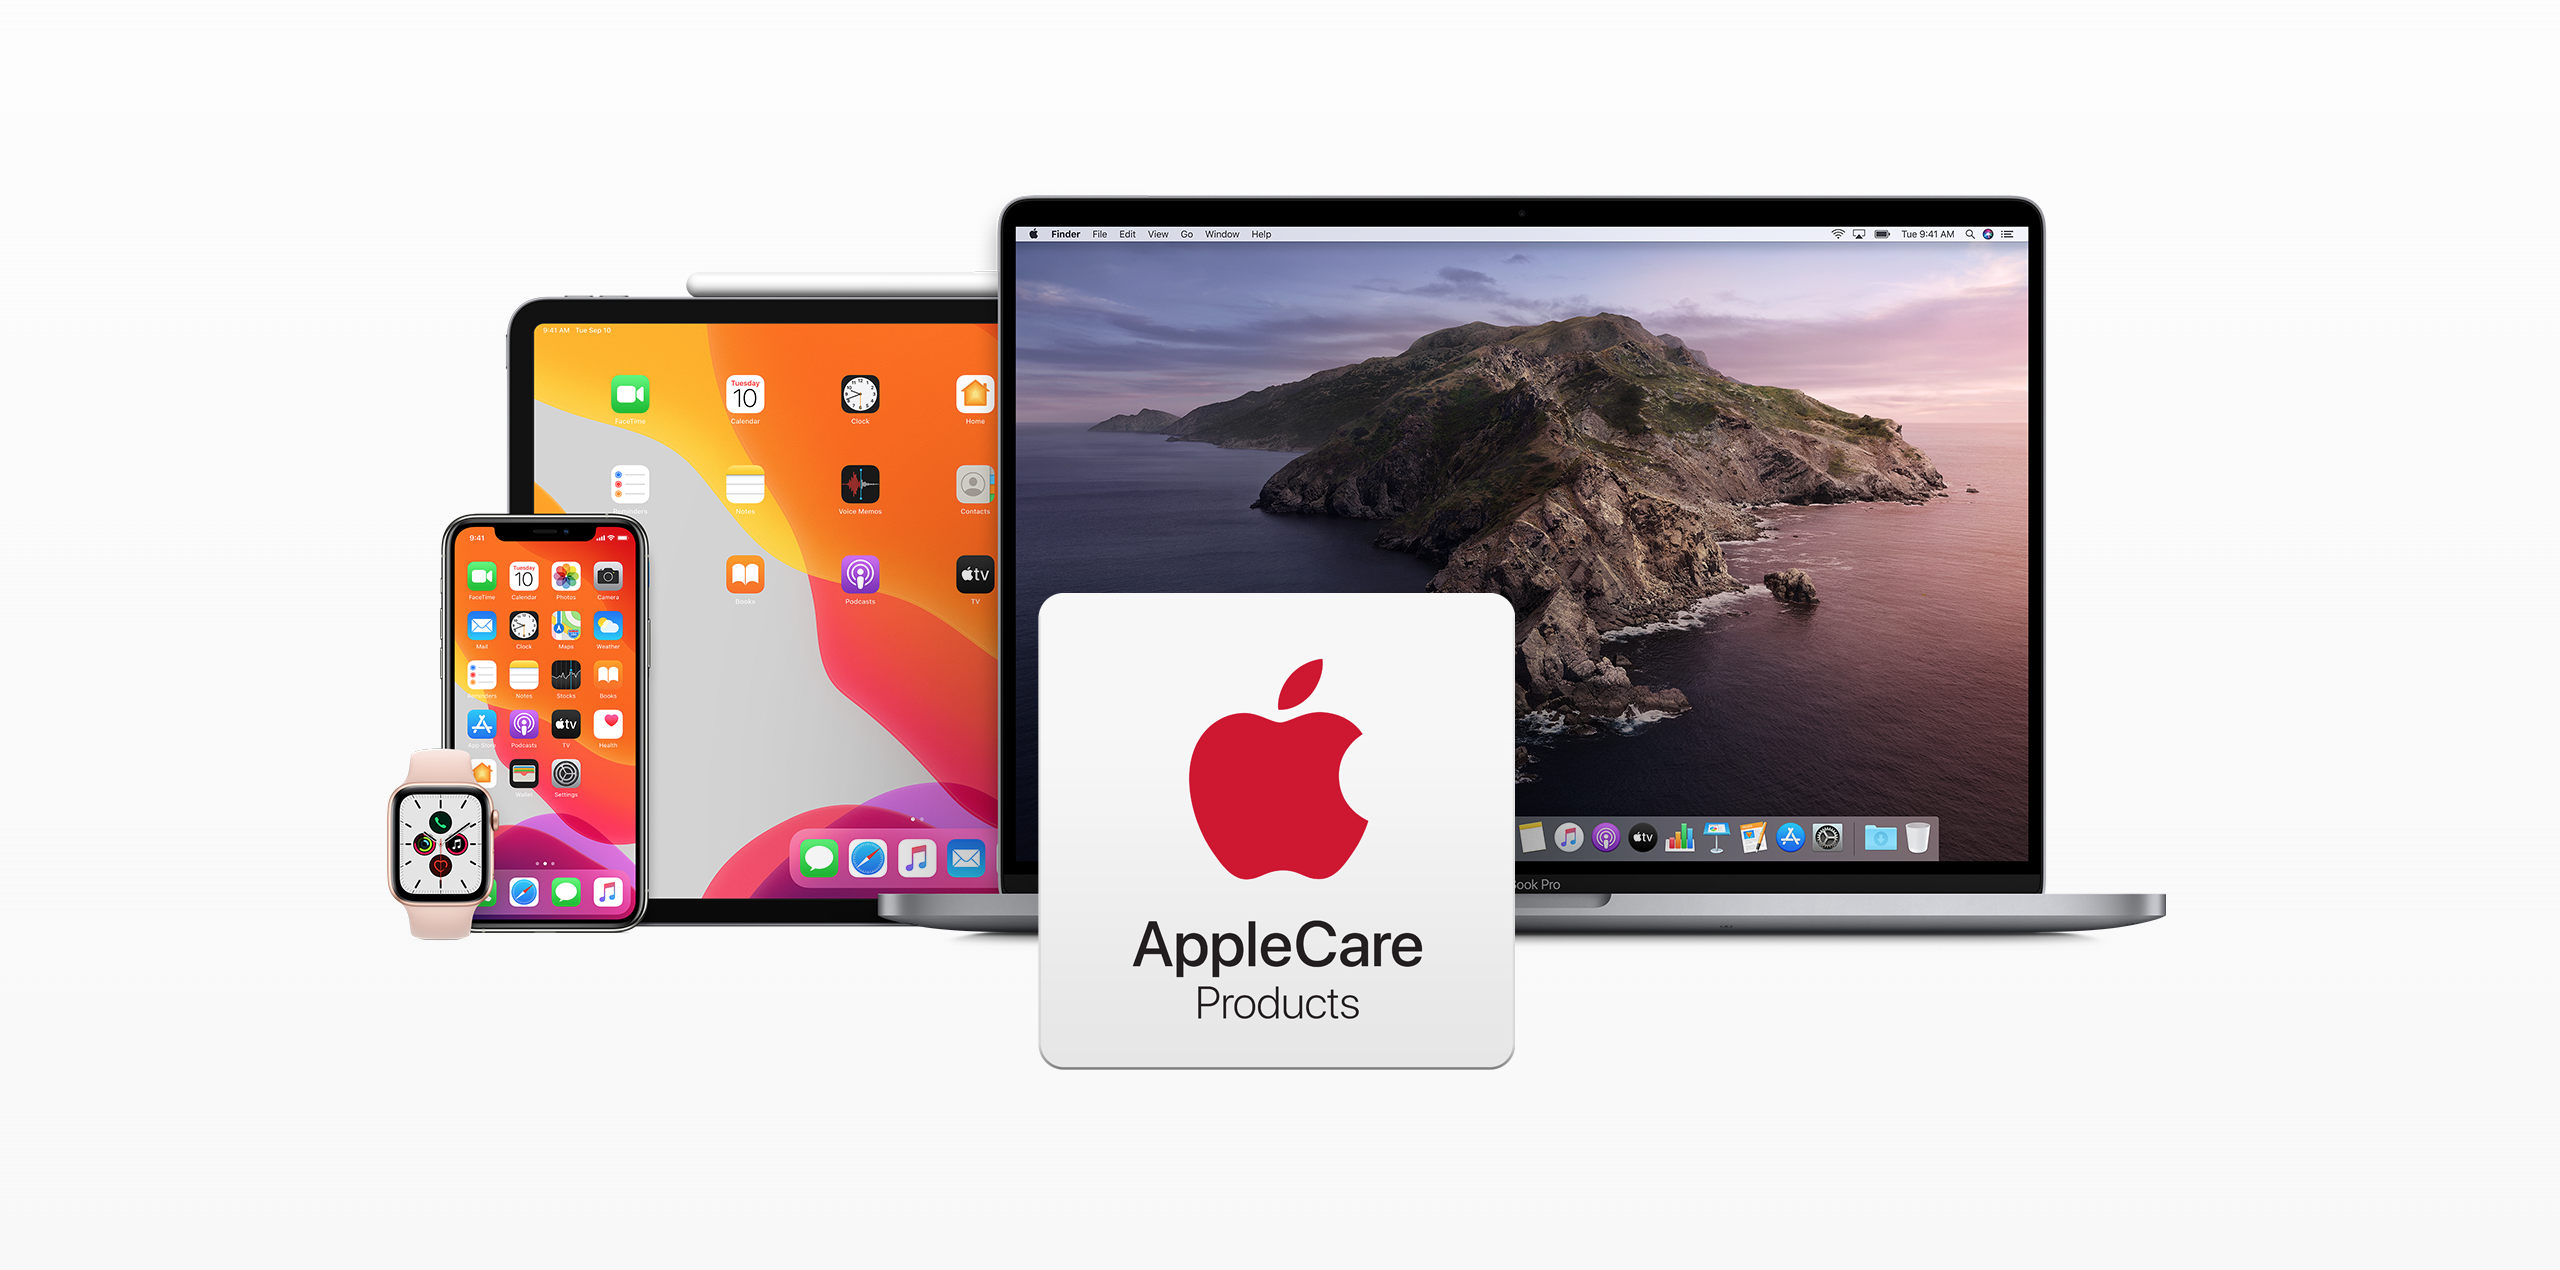 الخدمات 17 أغسطس 2021 0comments
Apple إجراء تغييرات على AppleCare + بالخارج